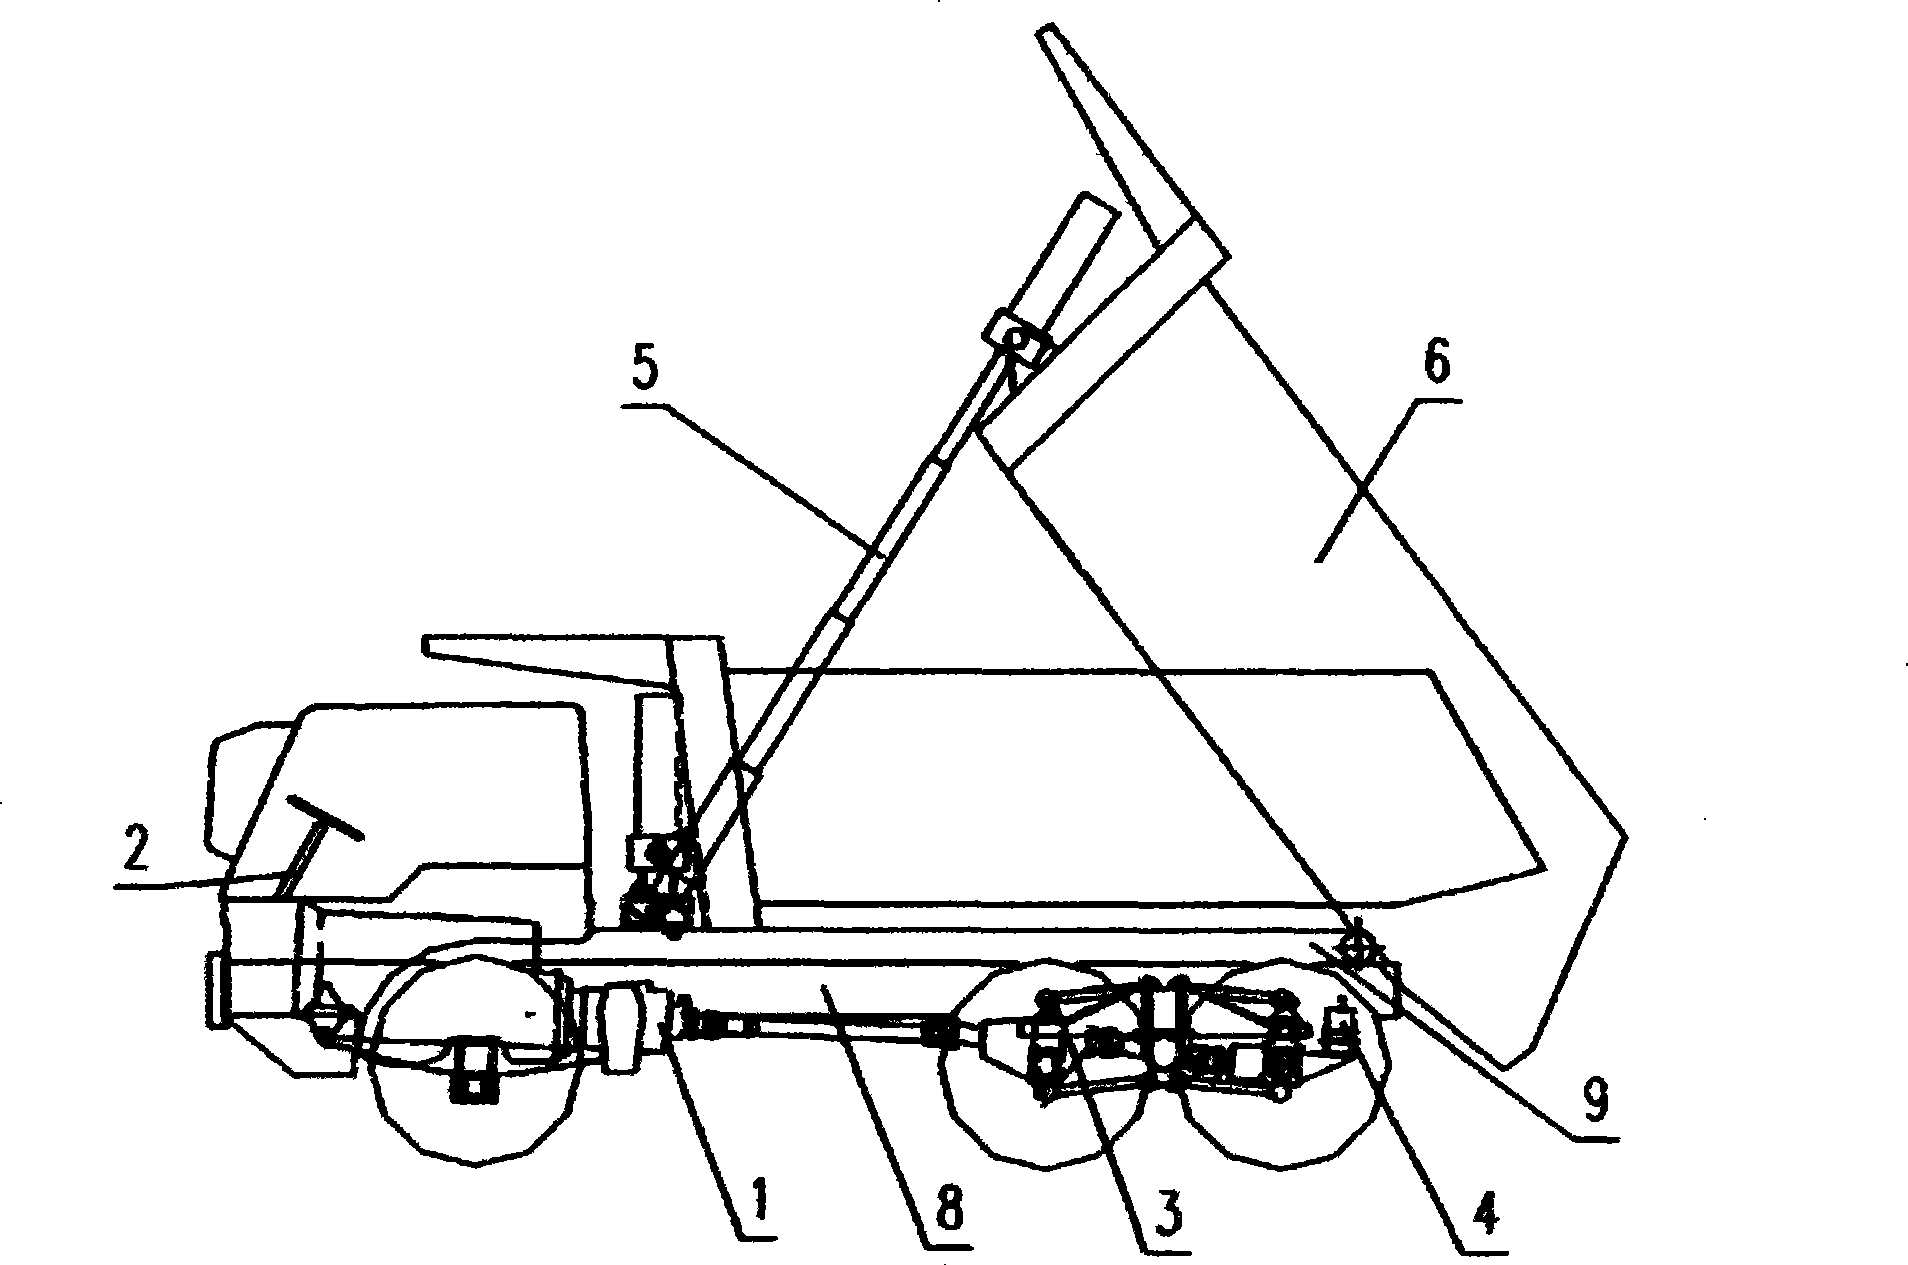 Design method for off-highway self-discharging vehicle